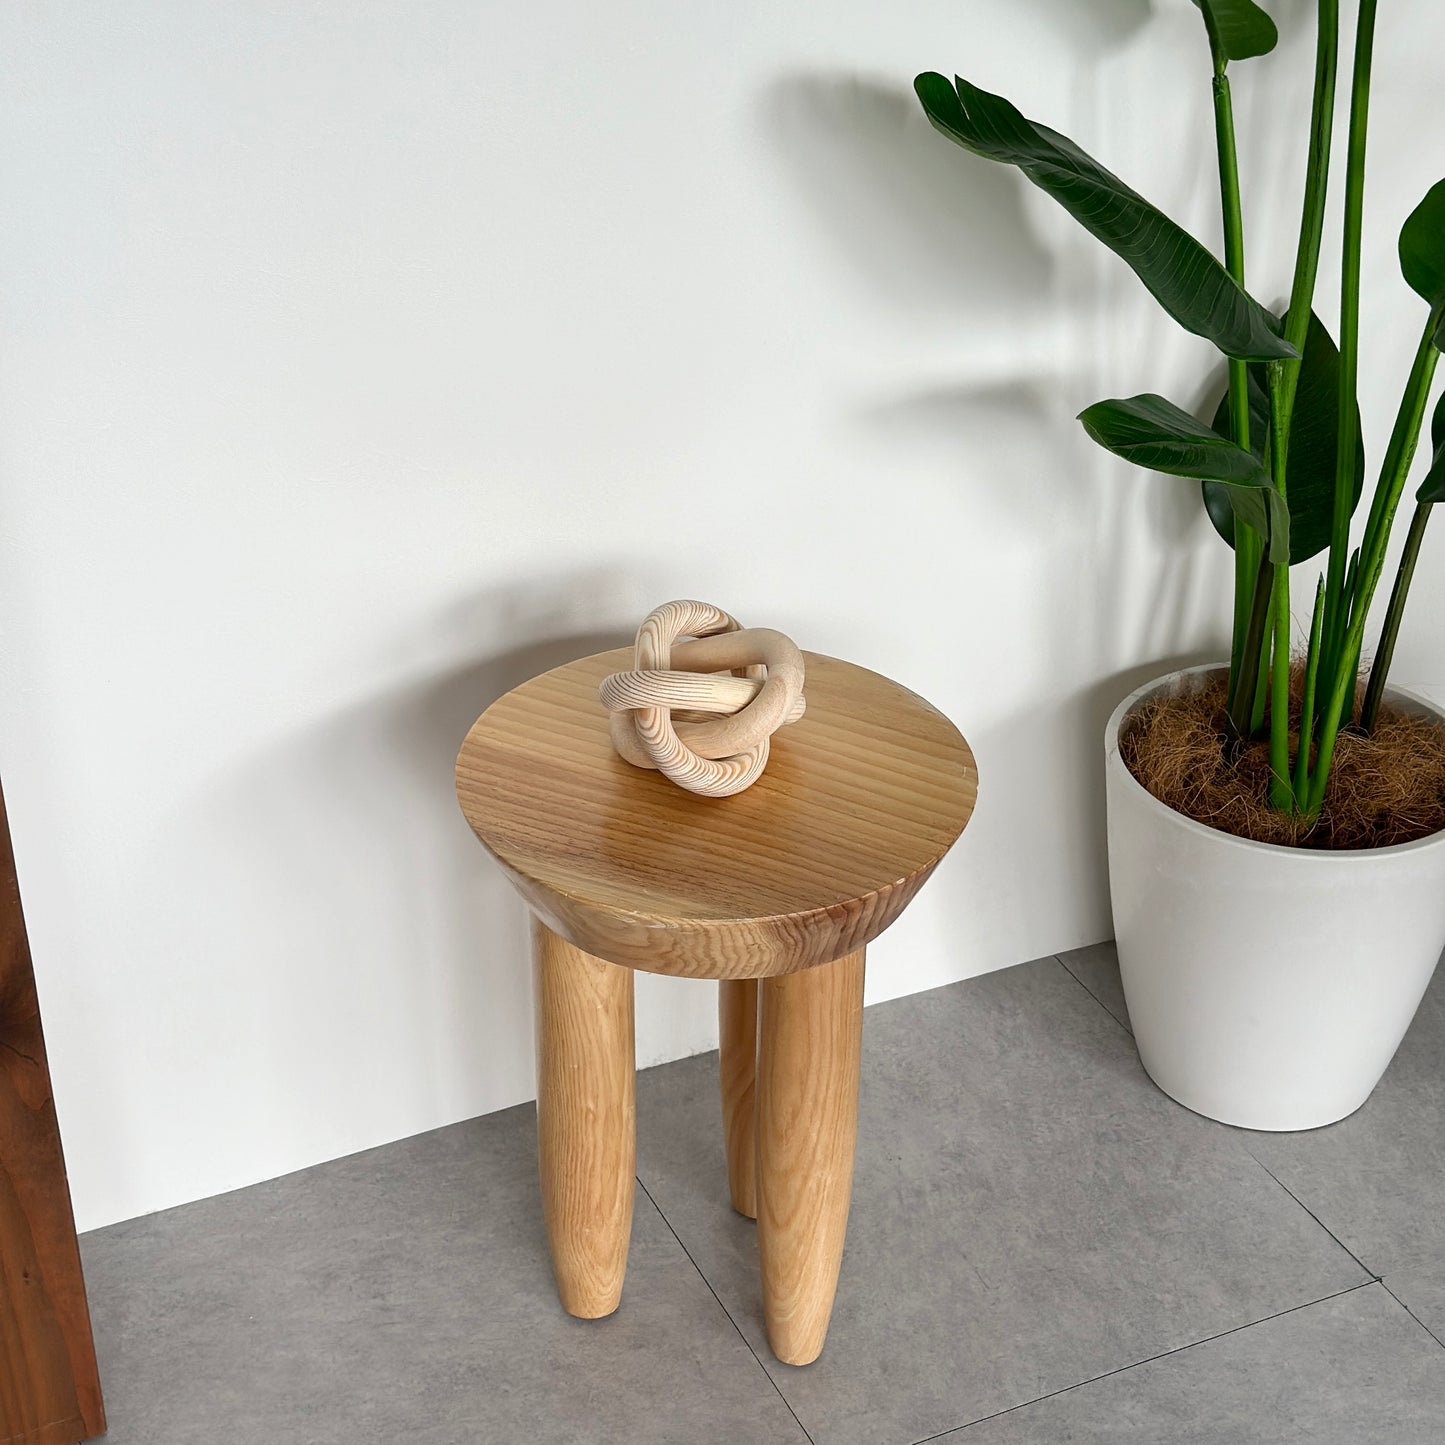 ウッドスツールの上に置いた木製のオブジェ